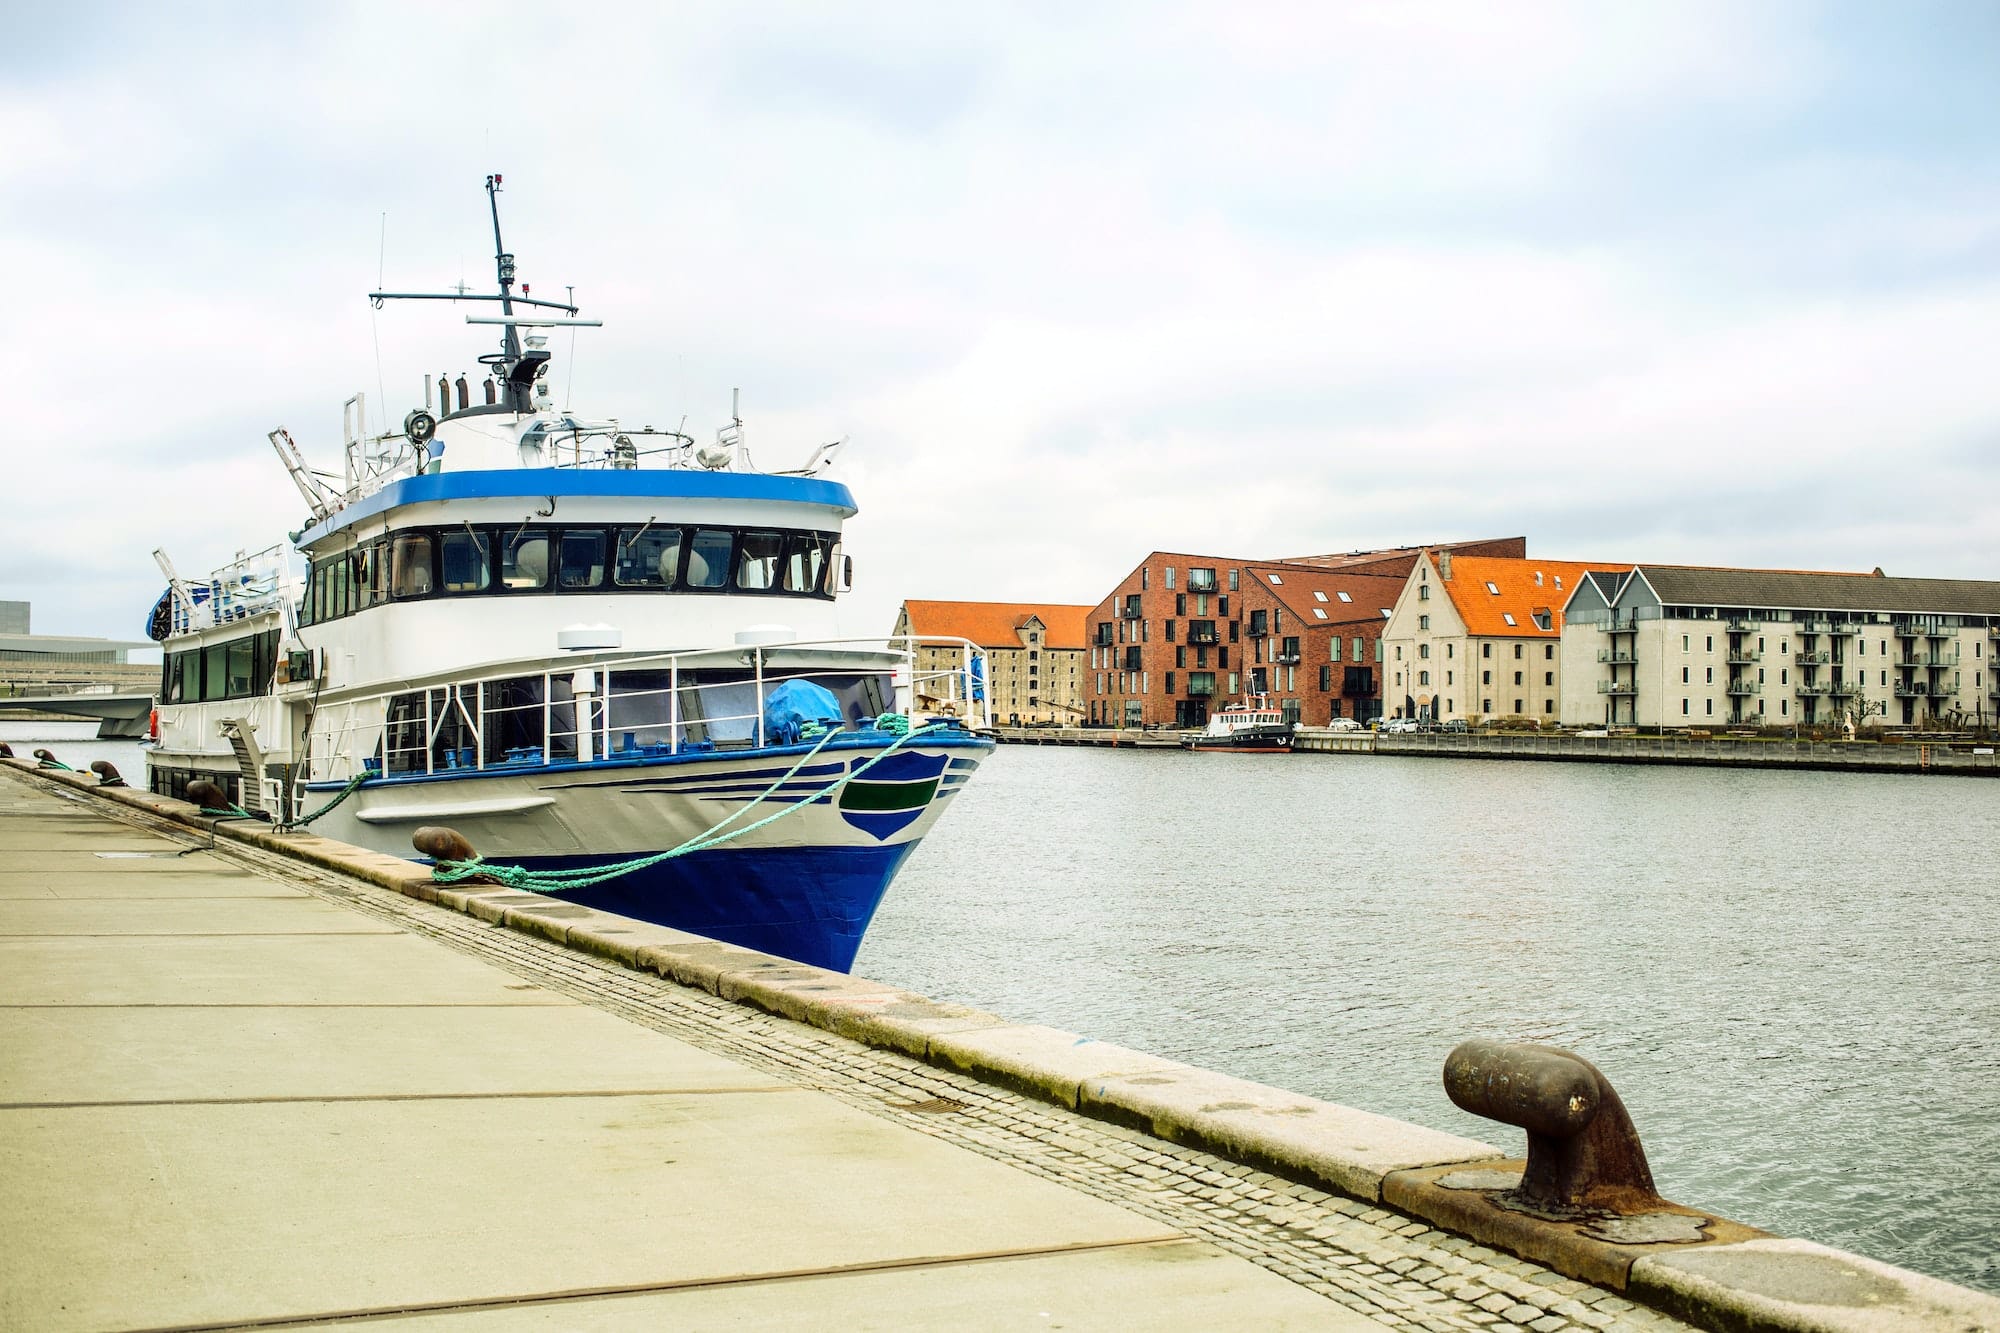 Ship restaurant, Havnepromenade, Copenhagen